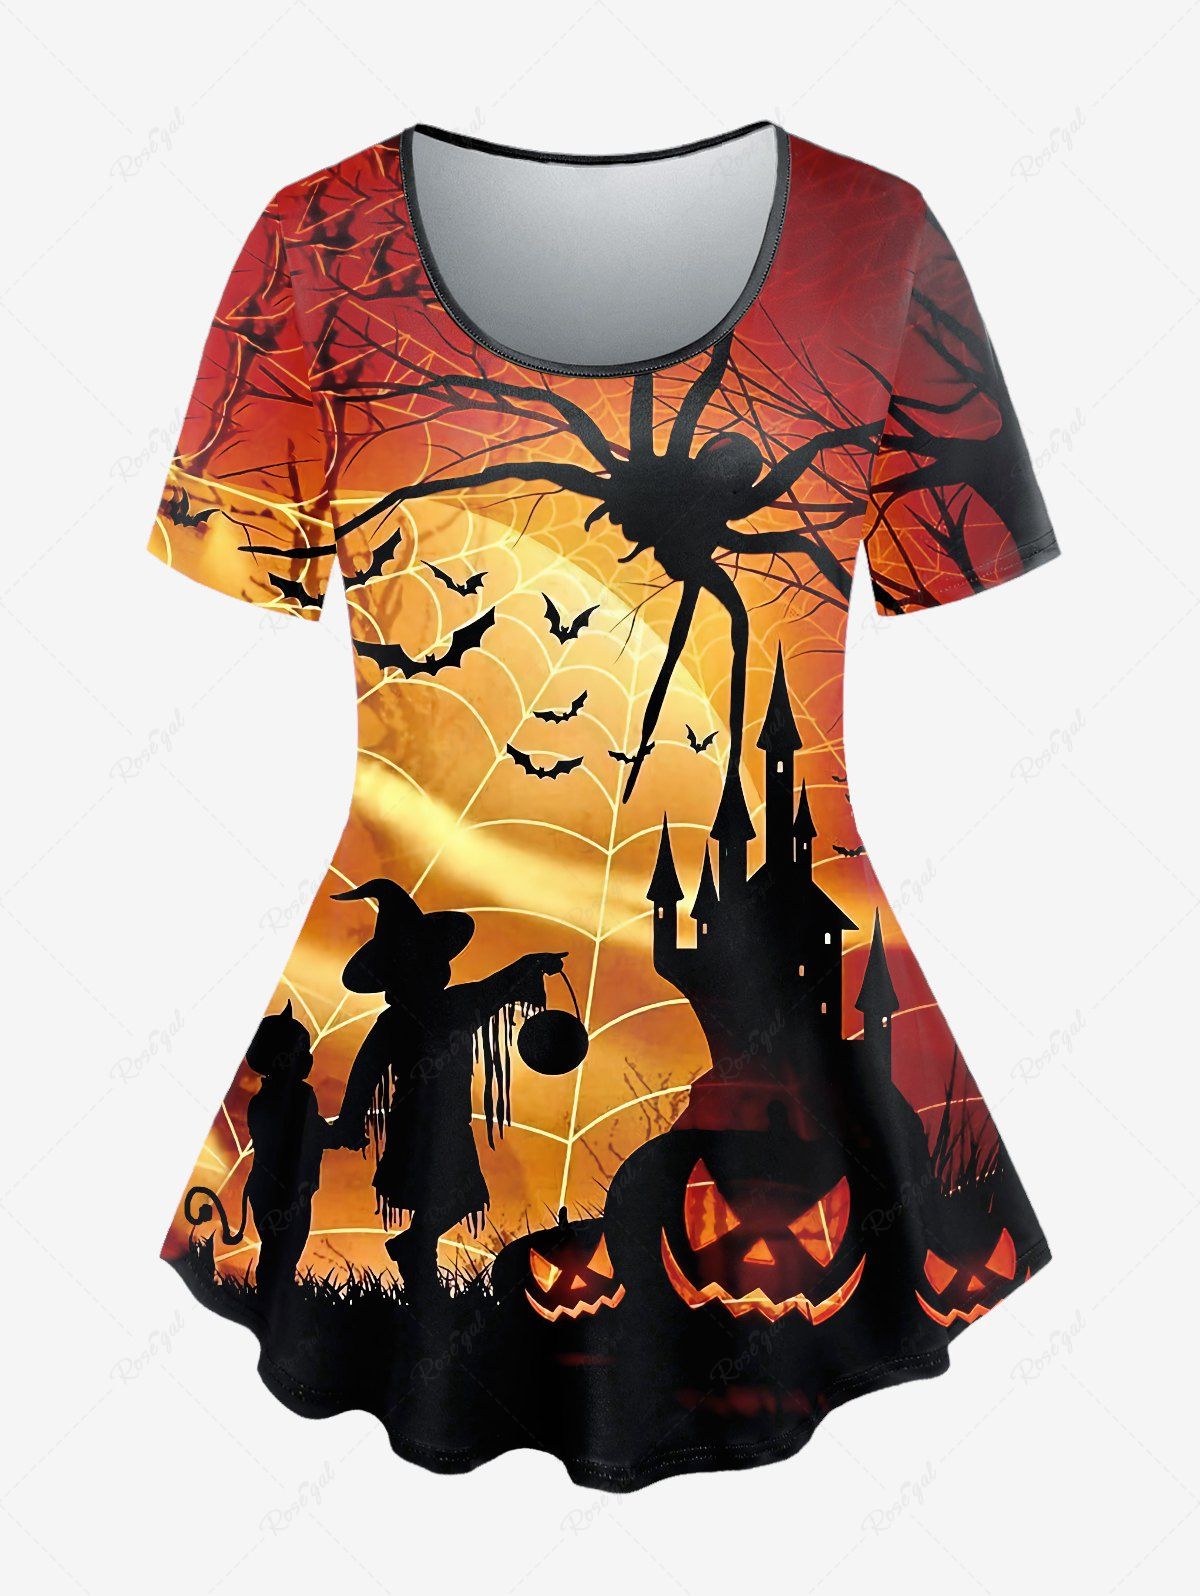 T-shirt D'Halloween à Imprimé Toile D'Araignée Chauve-souris et Citrouille de Grande Taille café 